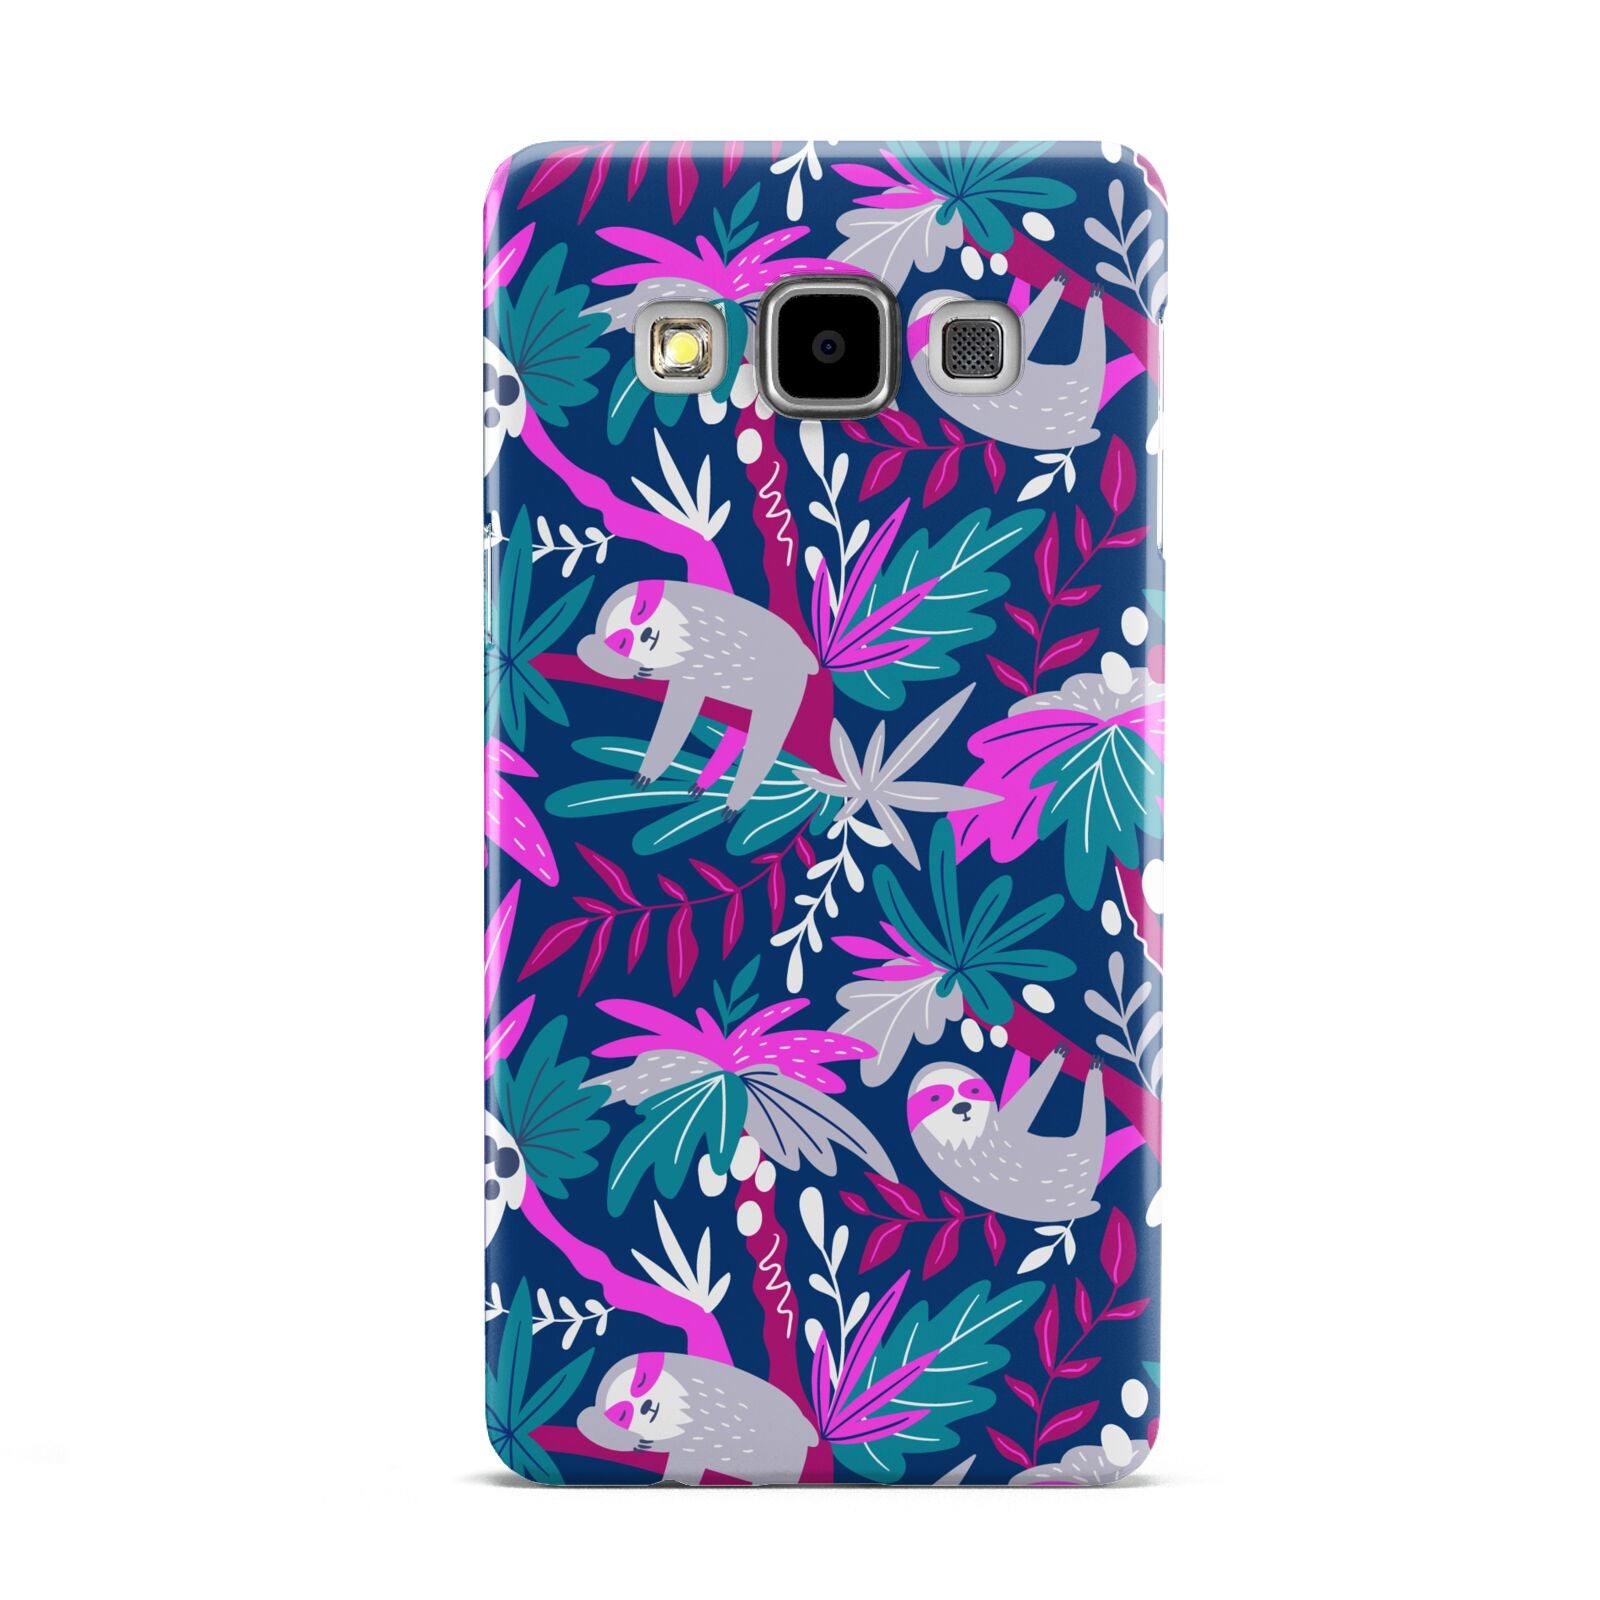 Sloth Samsung Galaxy A5 Case